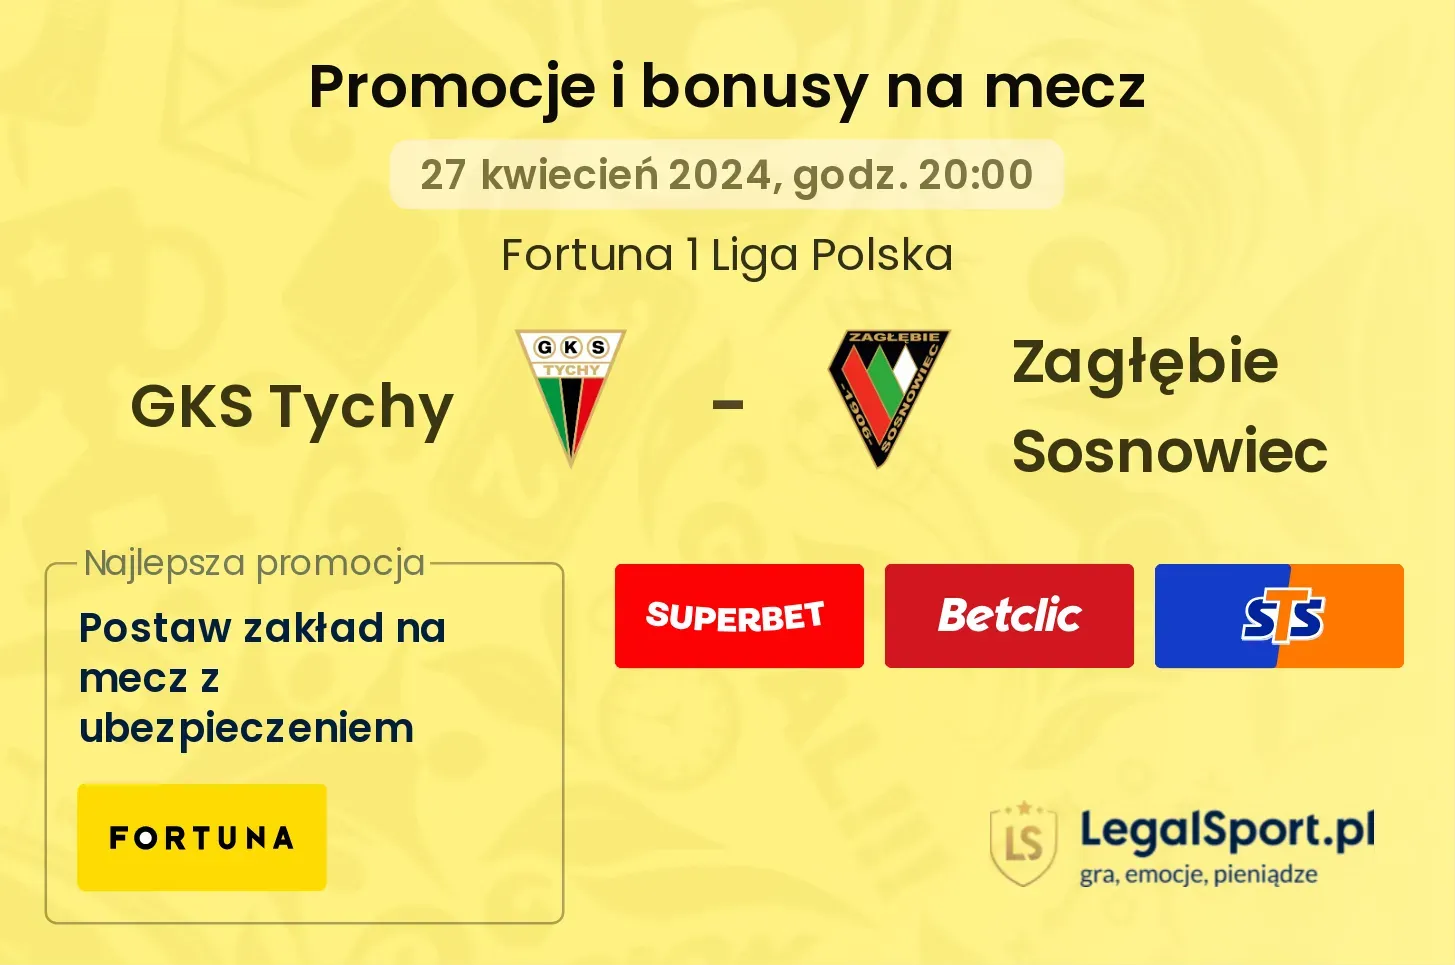 GKS Tychy - Zagłębie Sosnowiec promocje bonusy na mecz